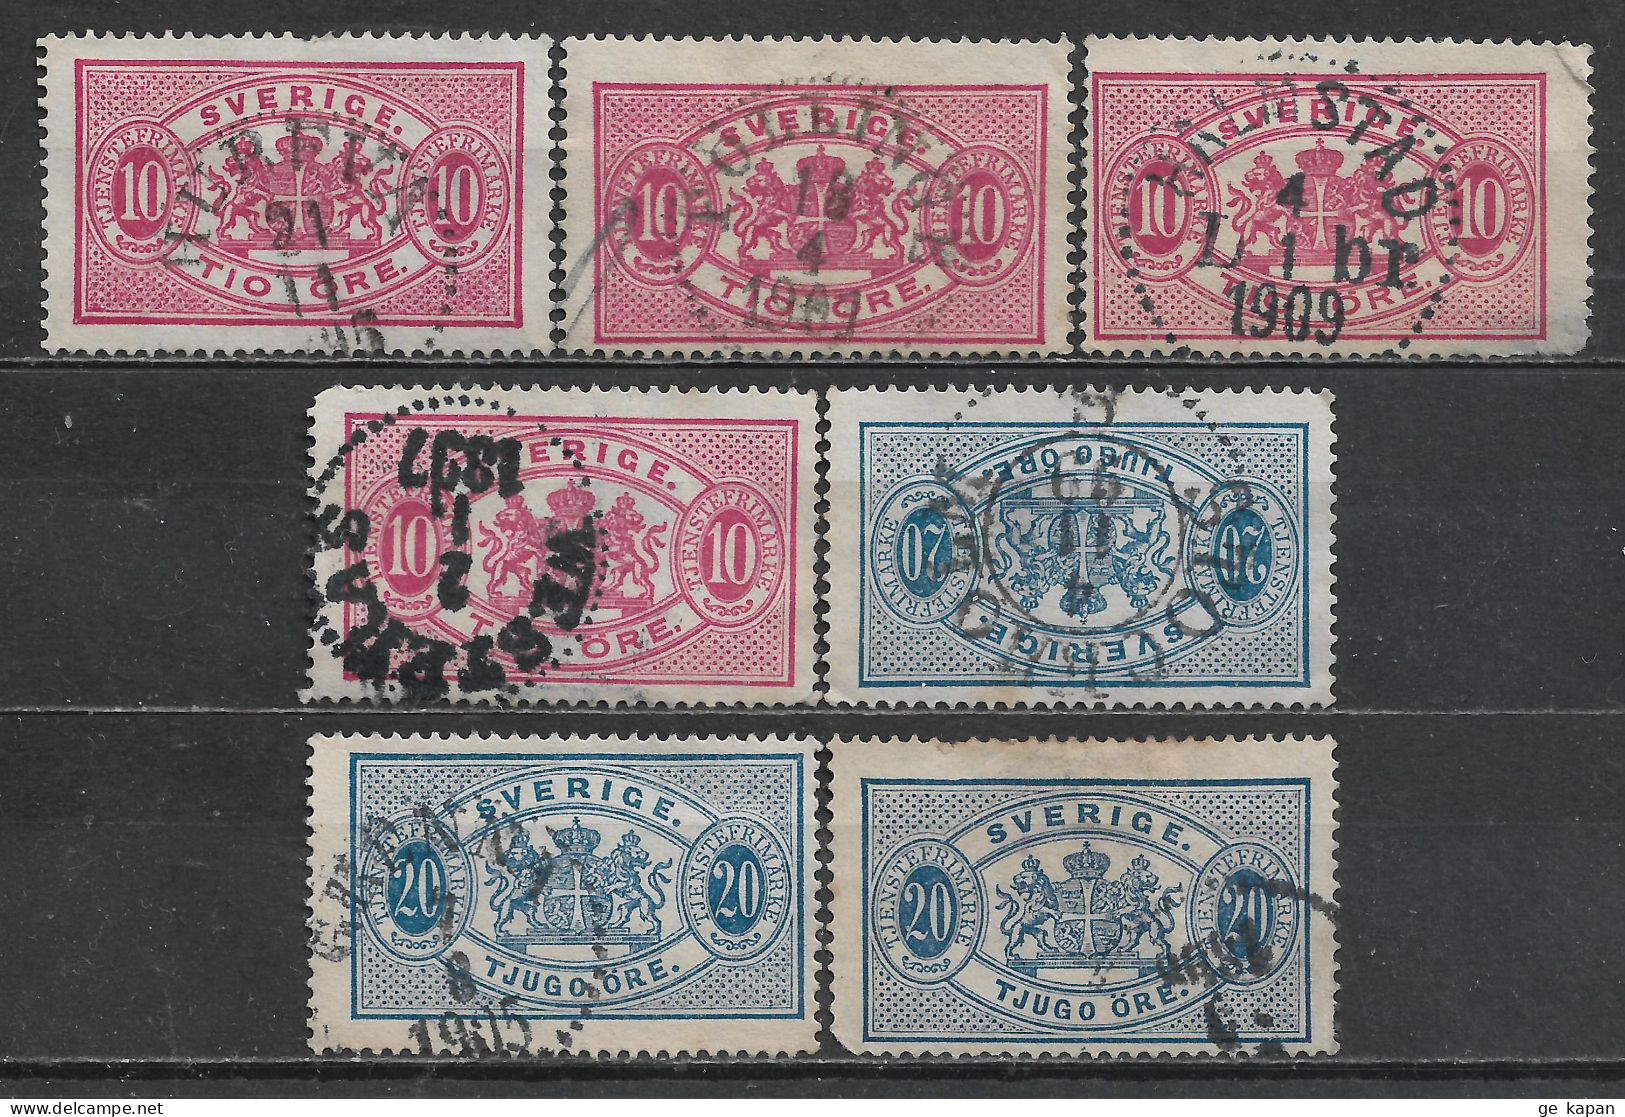 1891,1895 SWEDEN Official Set Of 7 Used Stamps Perf.13 (Scott # O17,O20) CV $2.40 - Dienstmarken